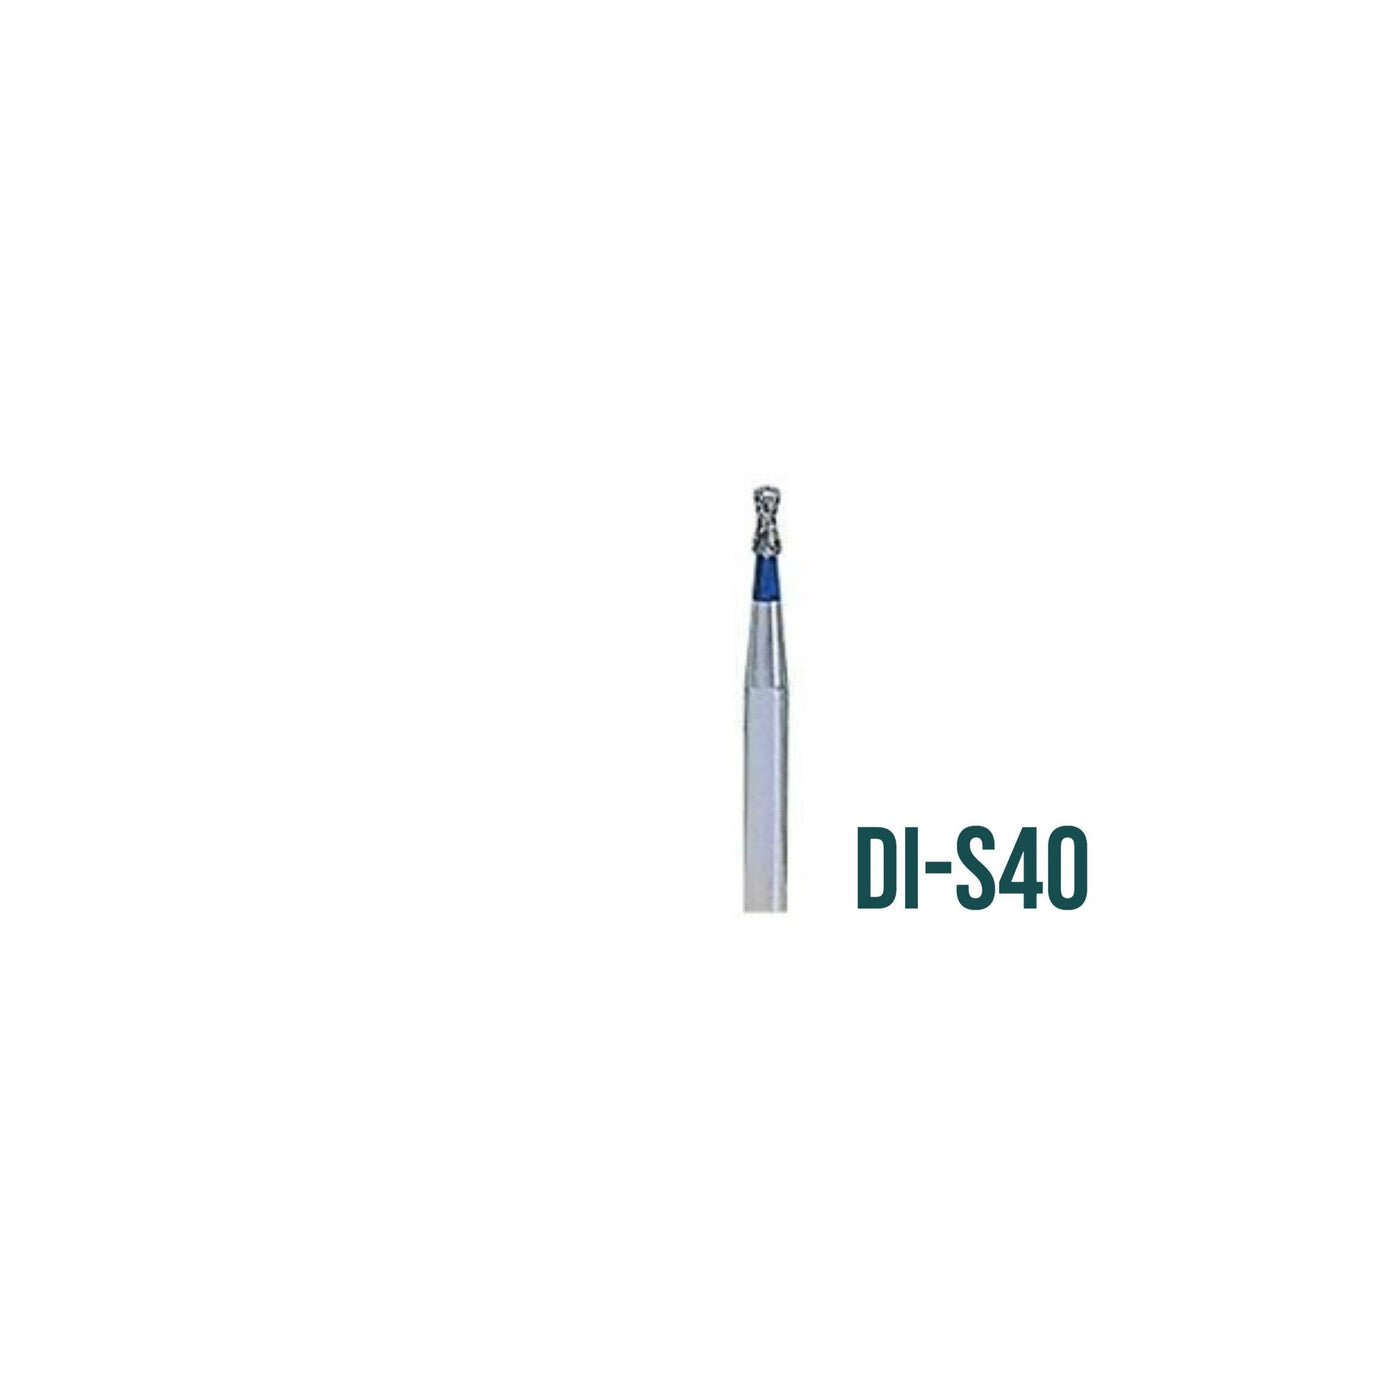 FG Diamond Burs - Pack of 5 - VSDent (4119991418979)